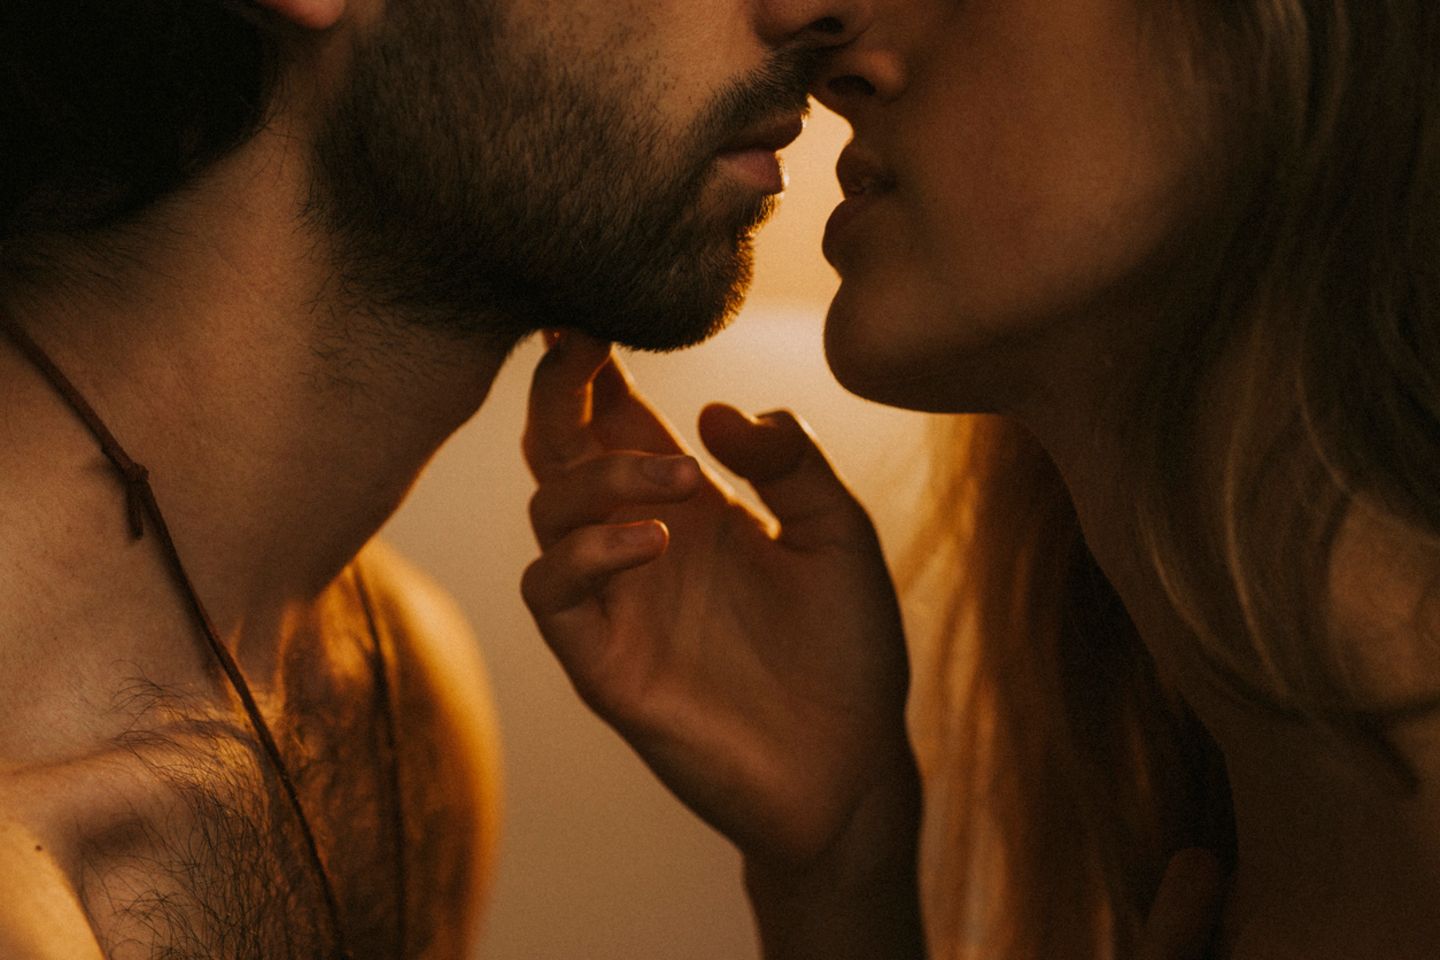 Mann und Frau sind kurz davor sich zu küssen